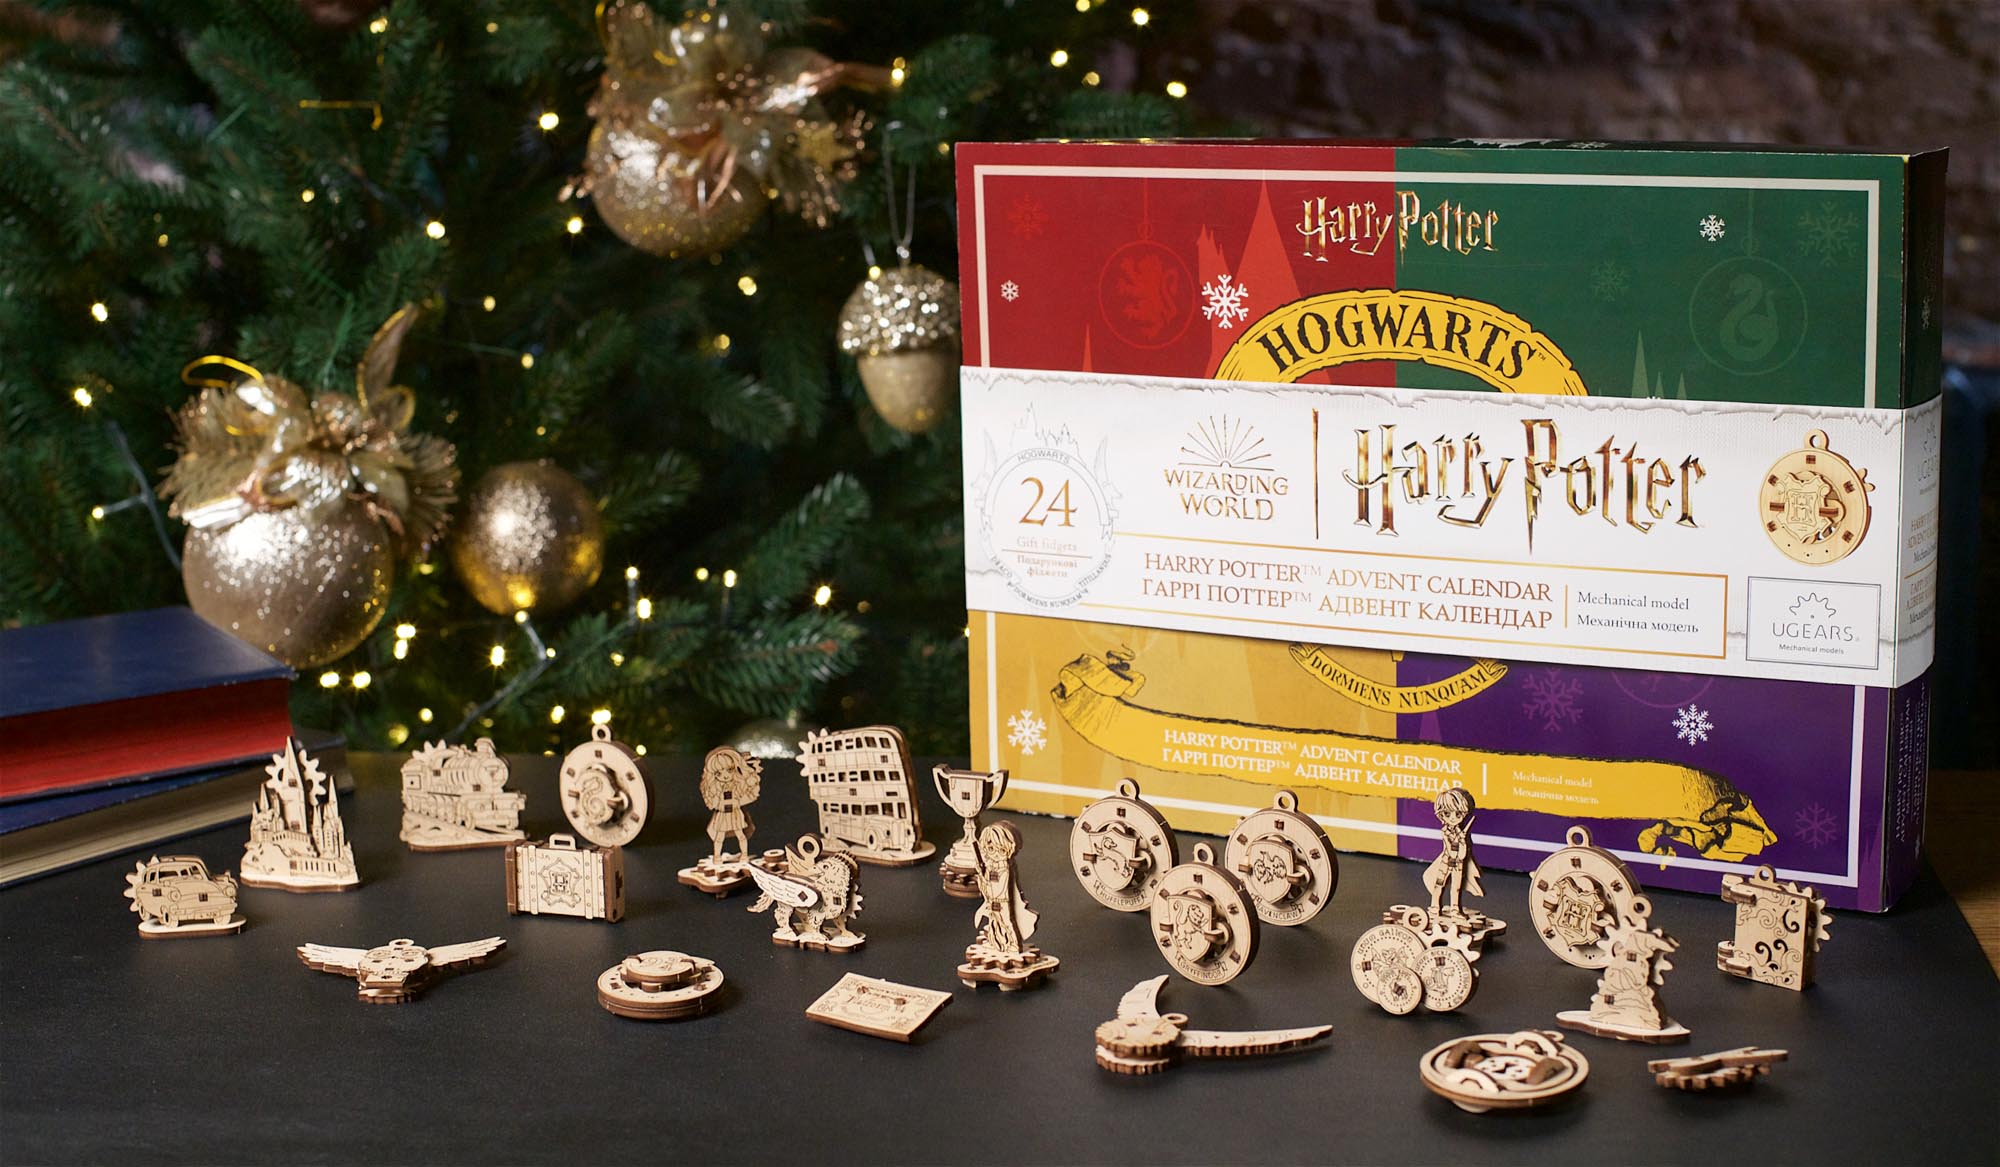 UGears Harry Potter Advent Calendar Wooden Mechanical Model